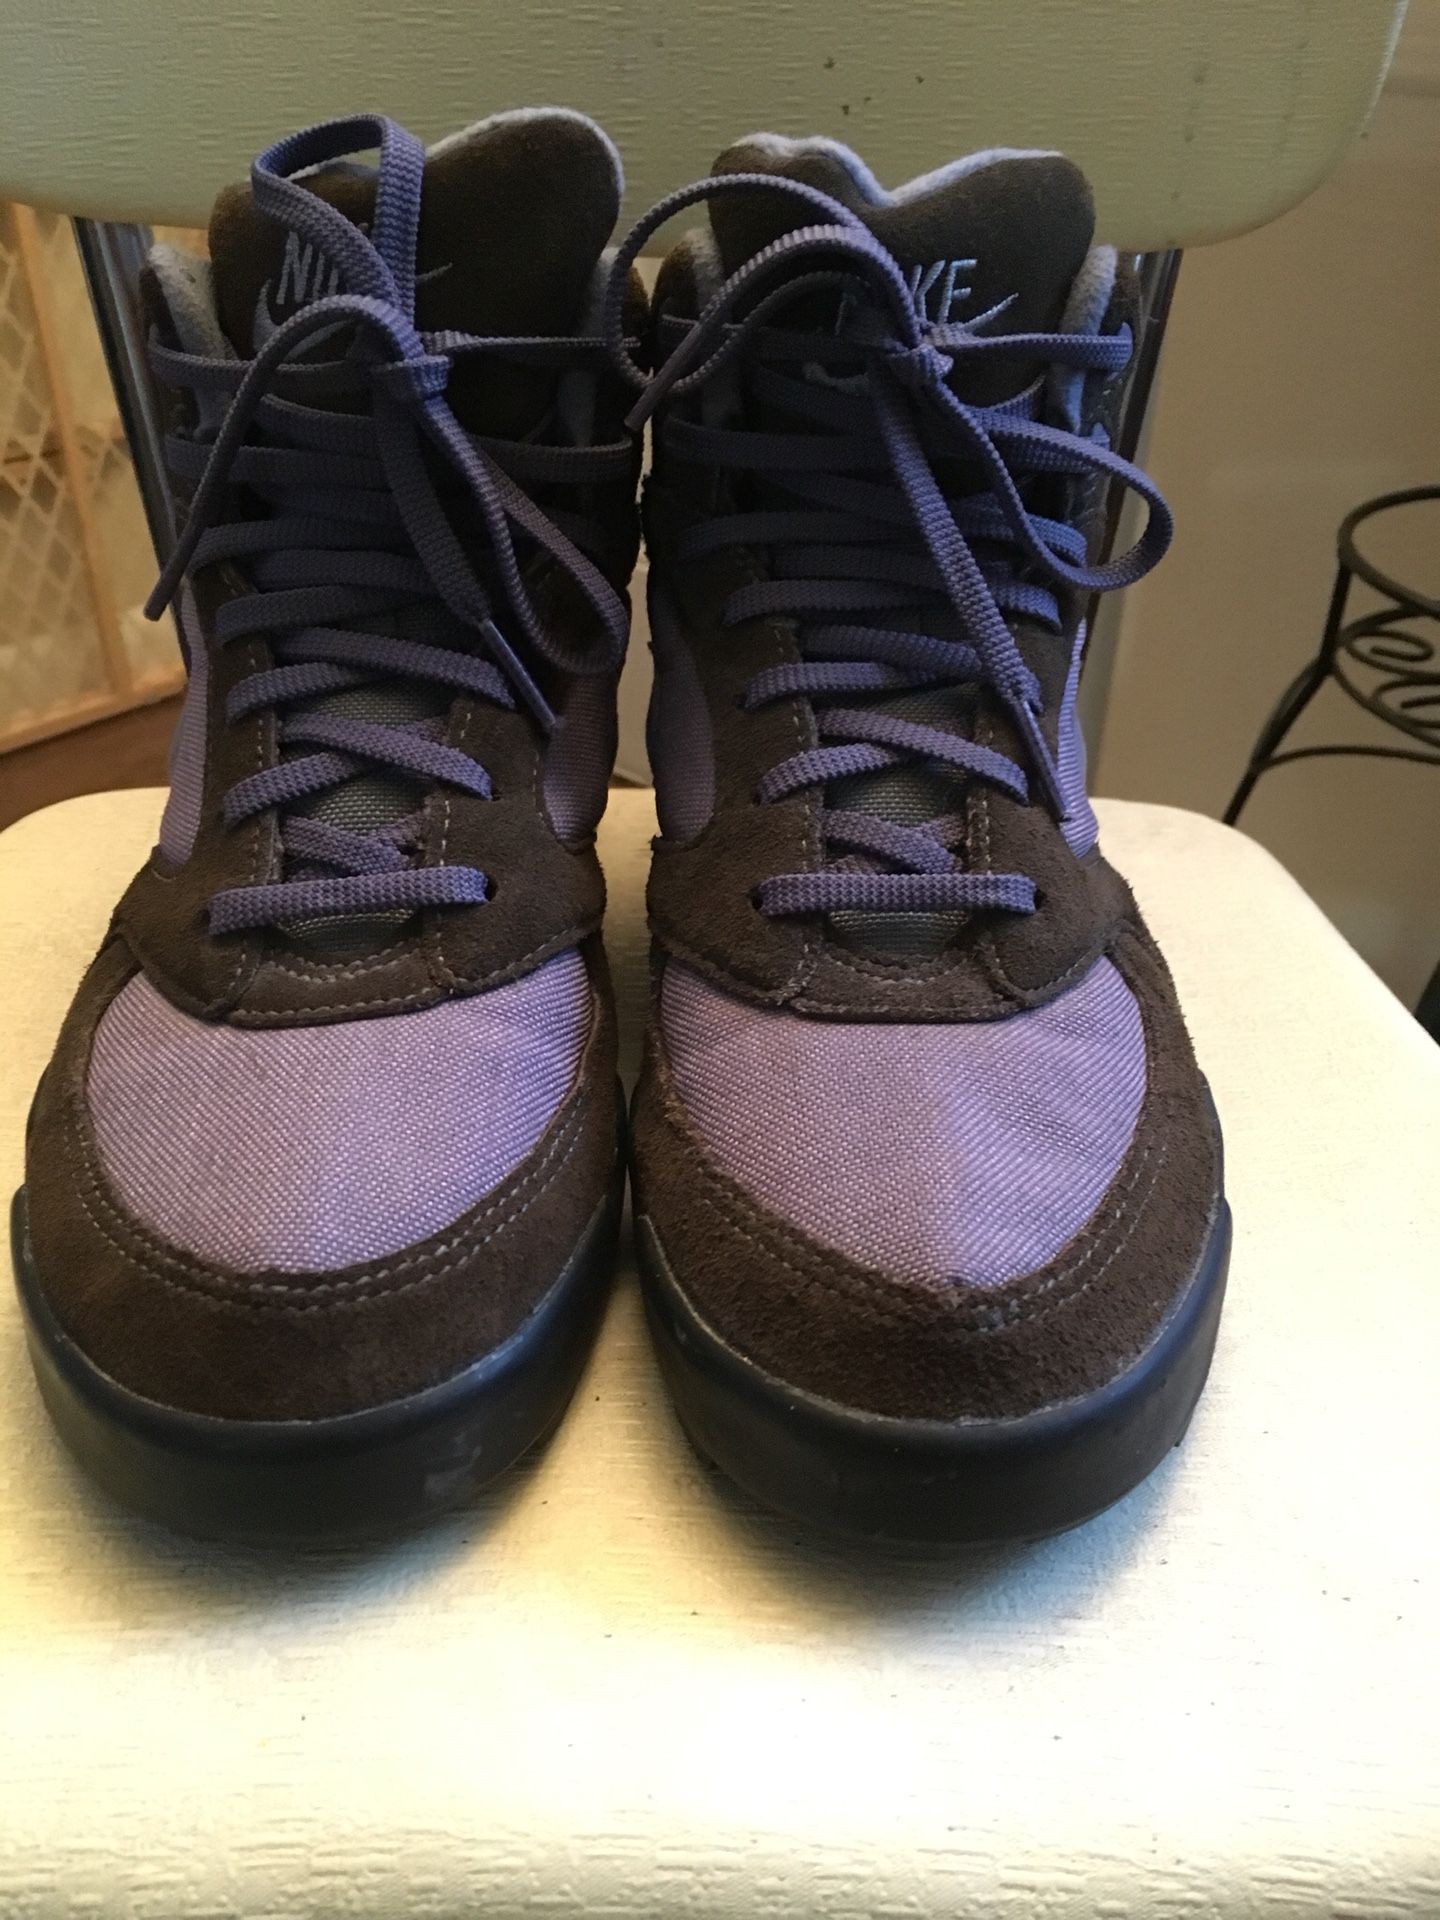 Vintage 90’s Nike Caldera hiking boot size 8